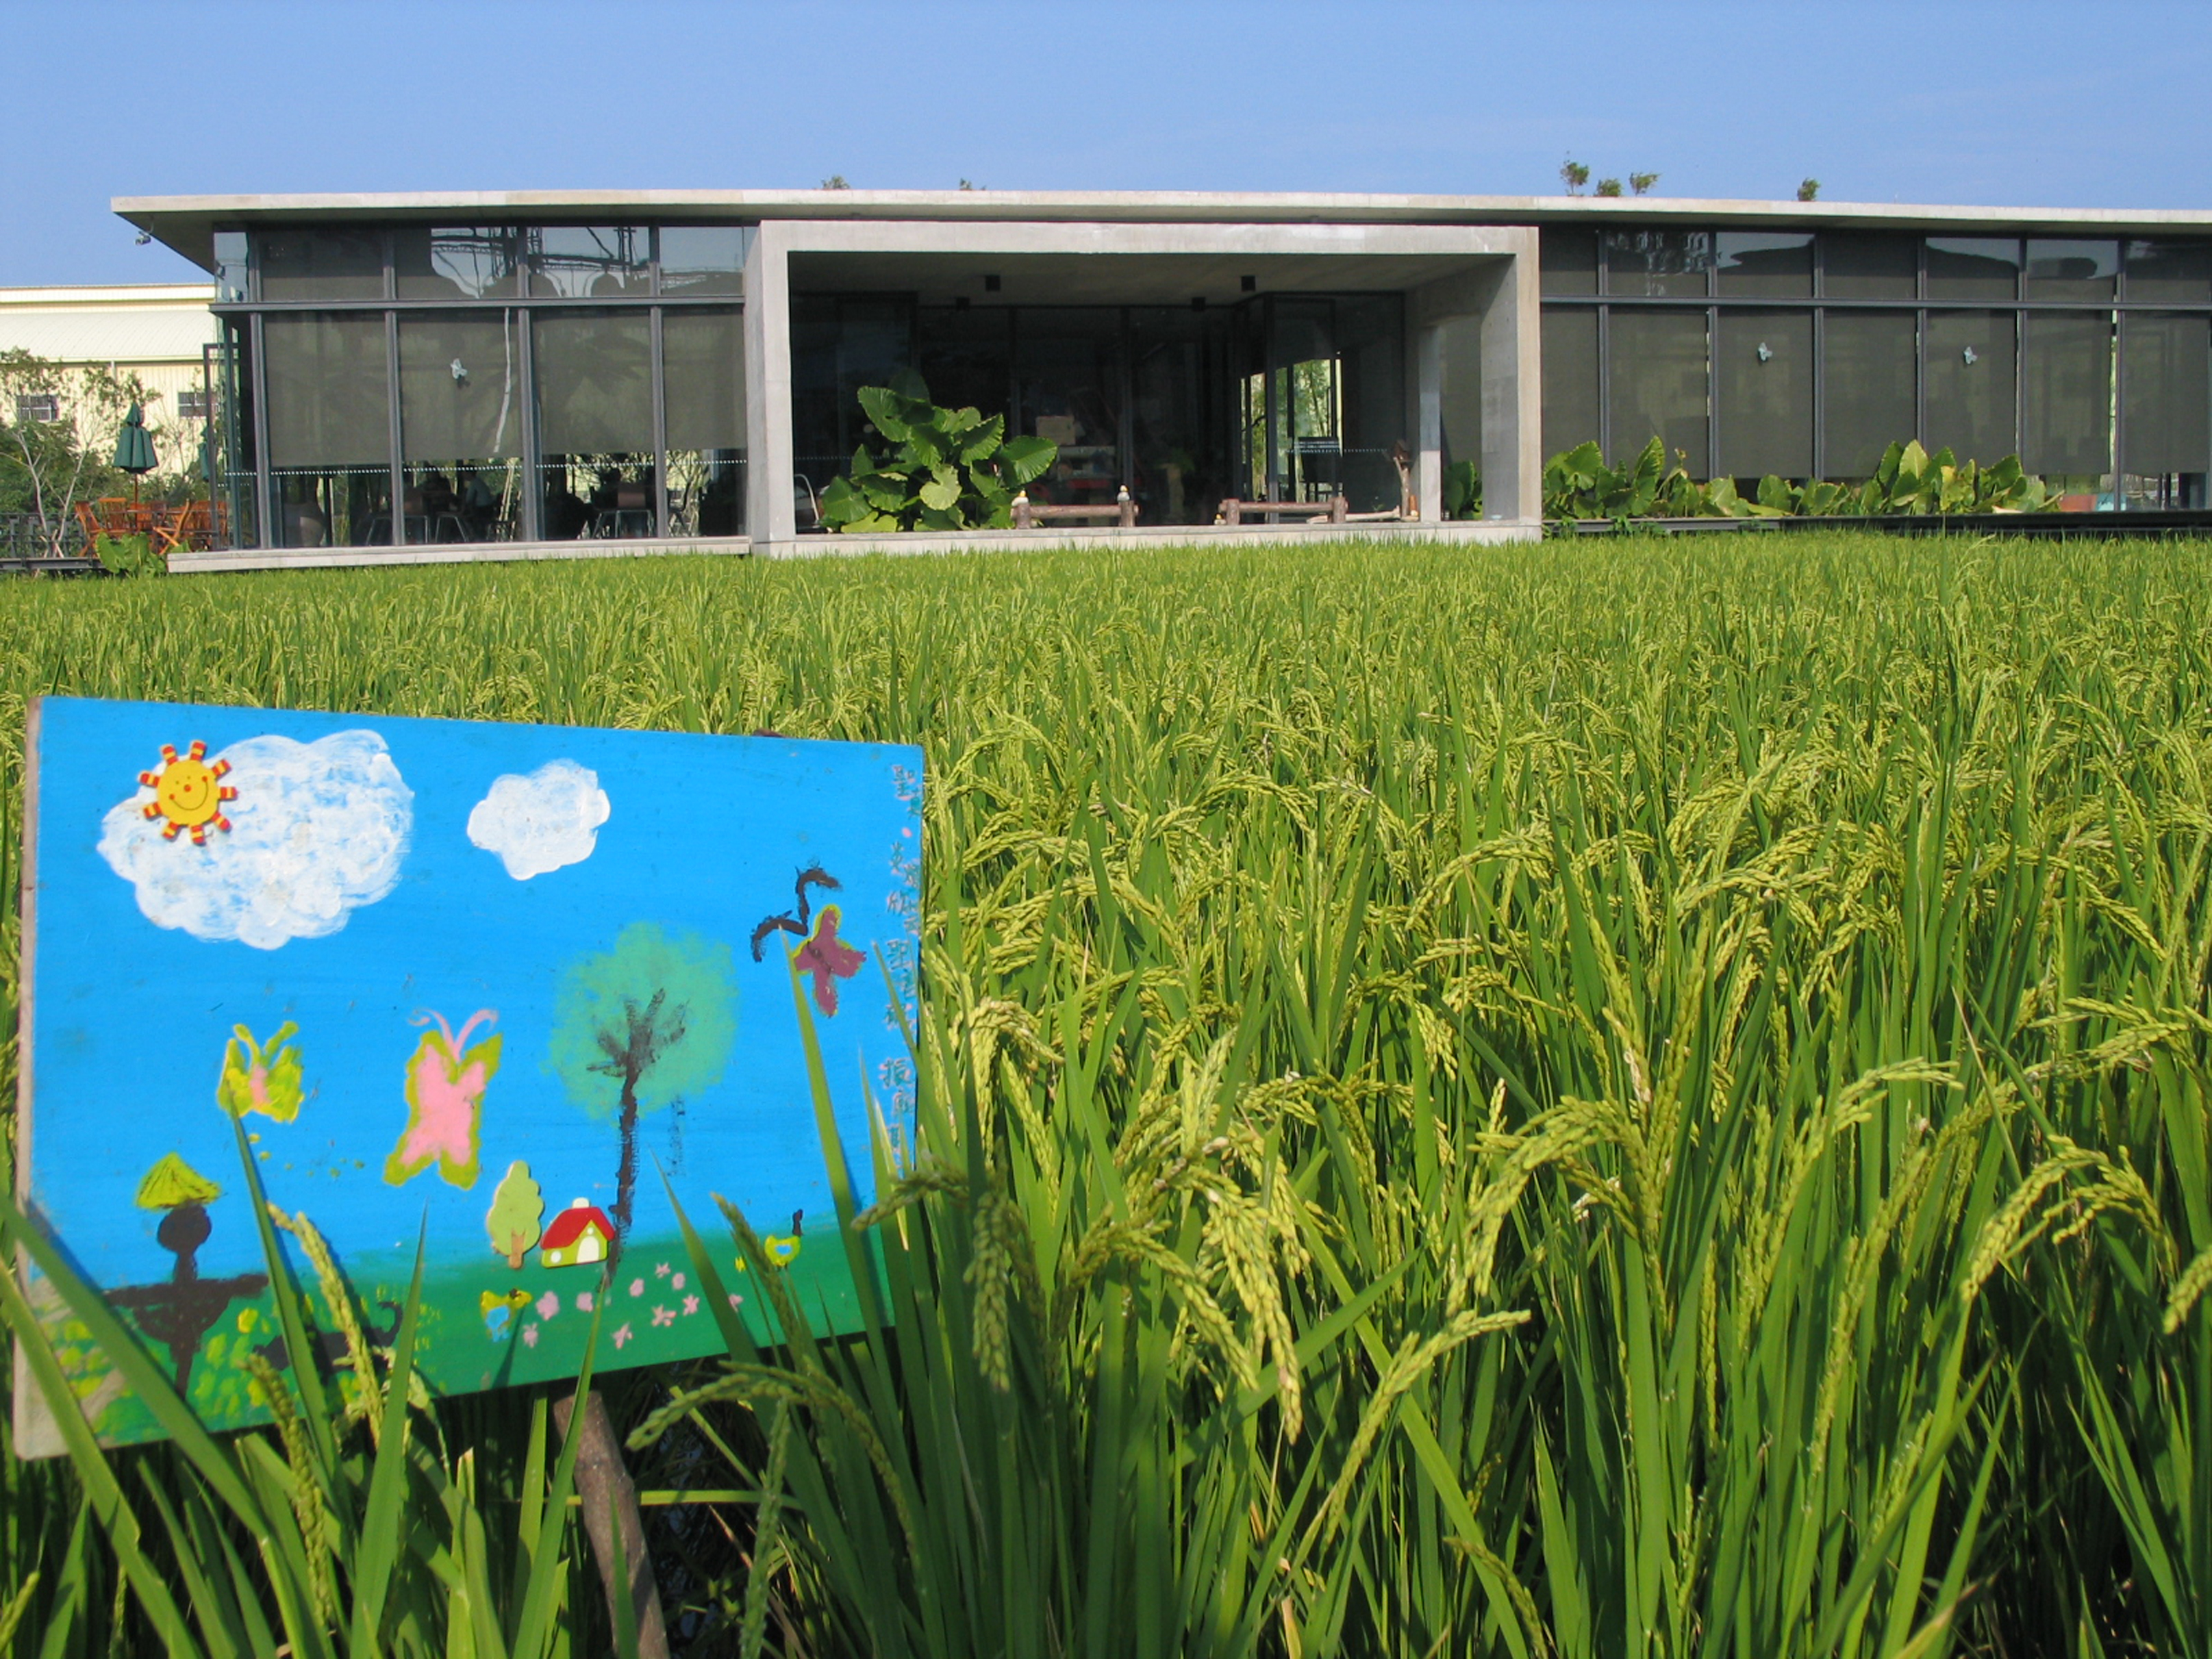 有机稻场是一栋「漂浮在稻田上的自然教室」。